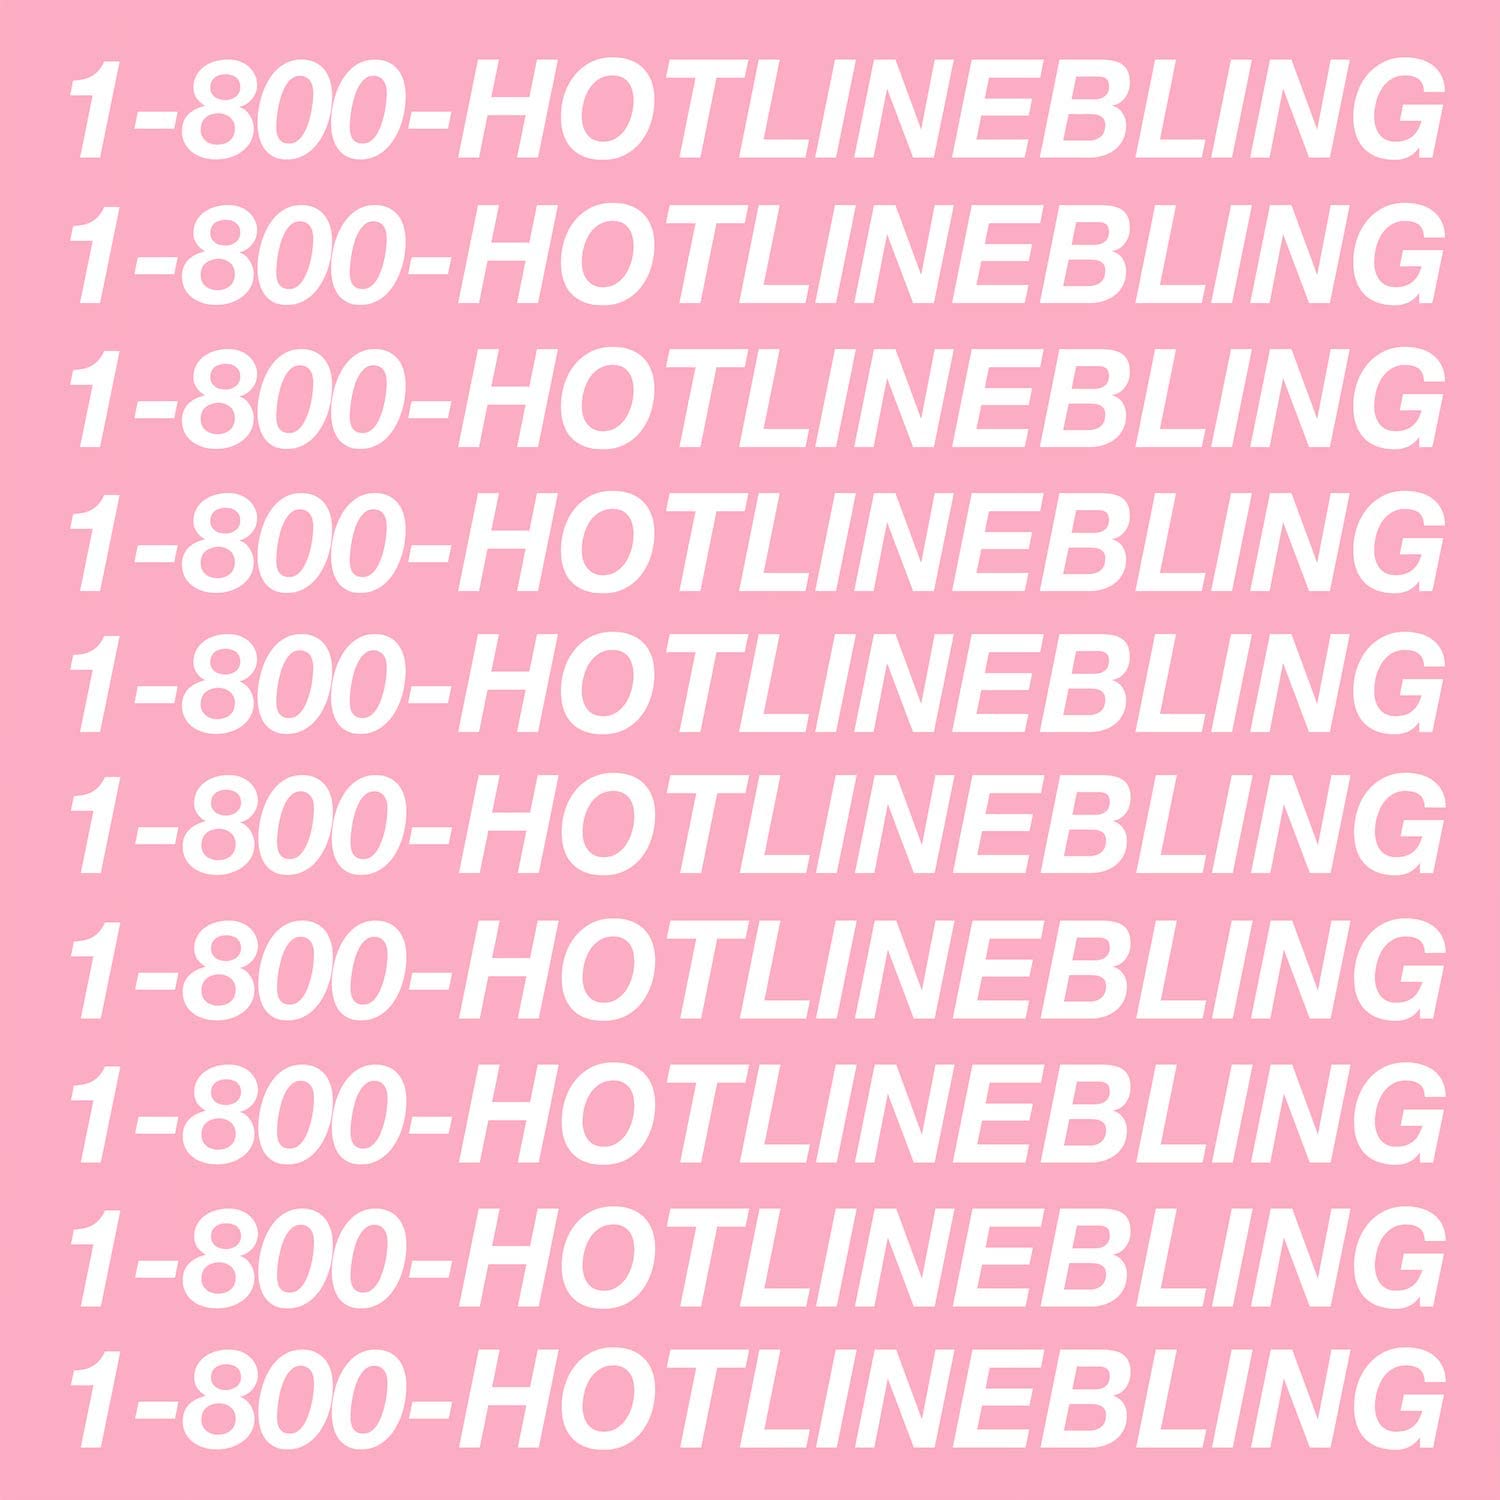 Drake — Hotline Bling cover artwork